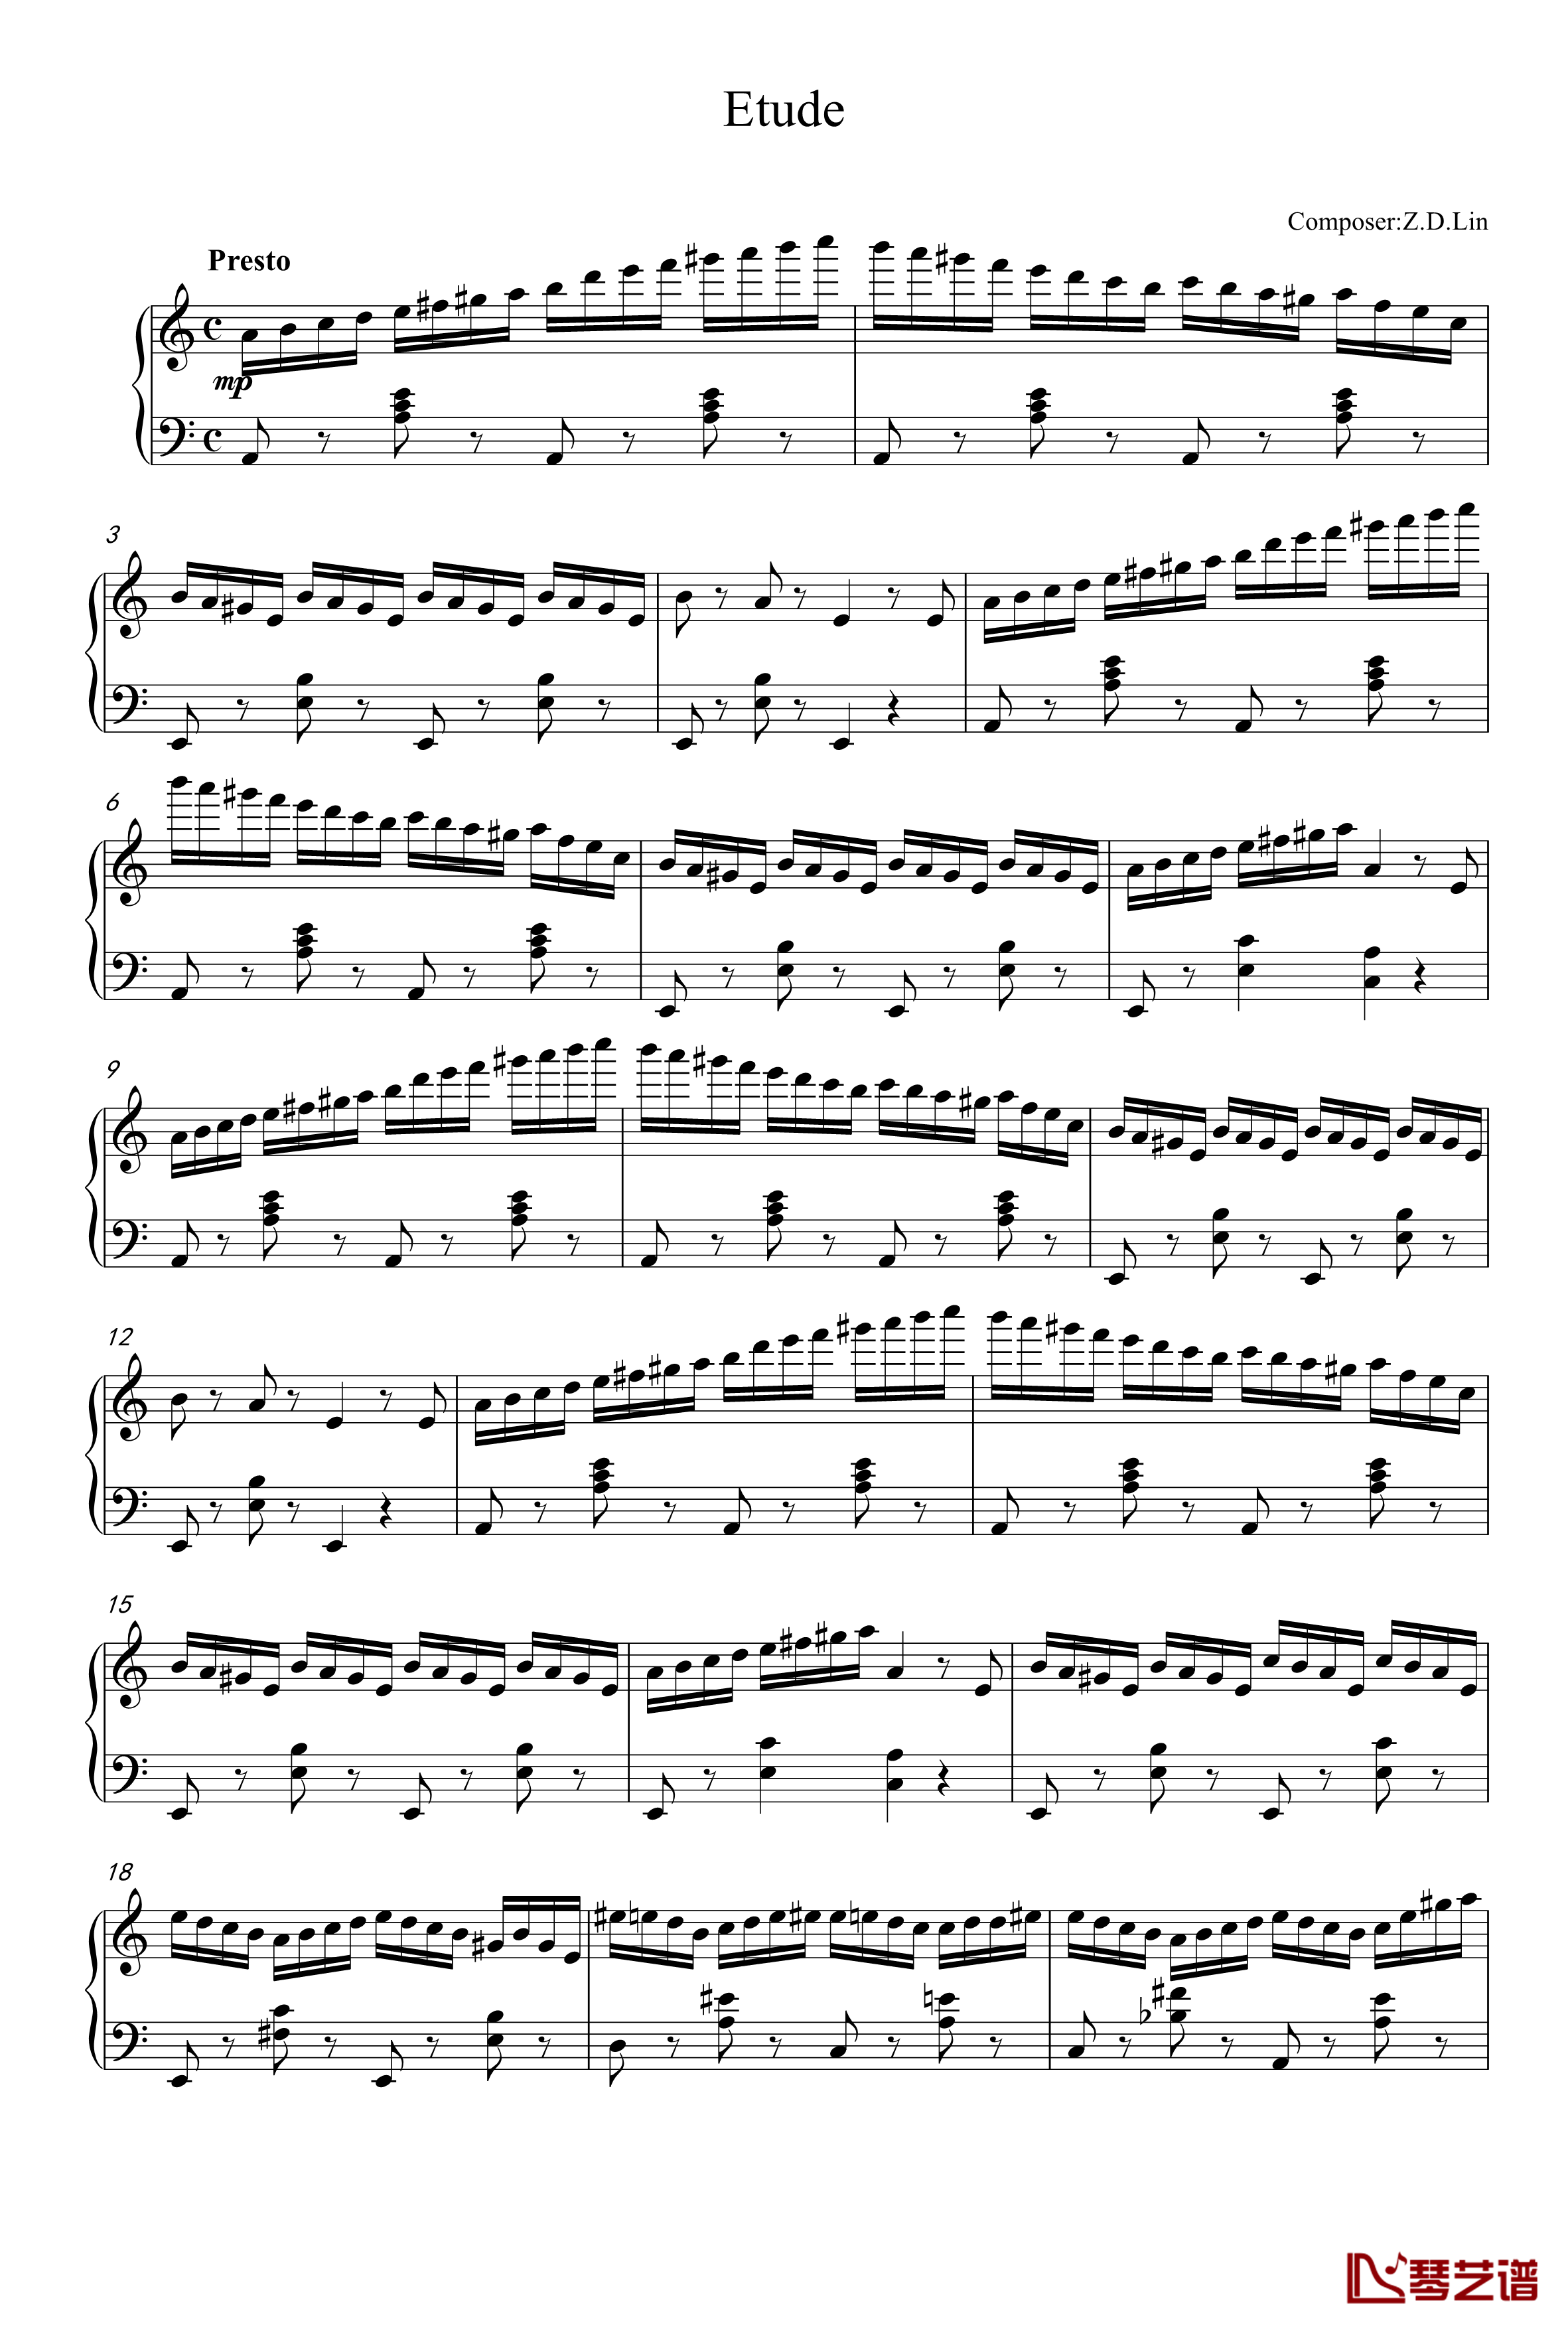 练习曲钢琴谱-zd20